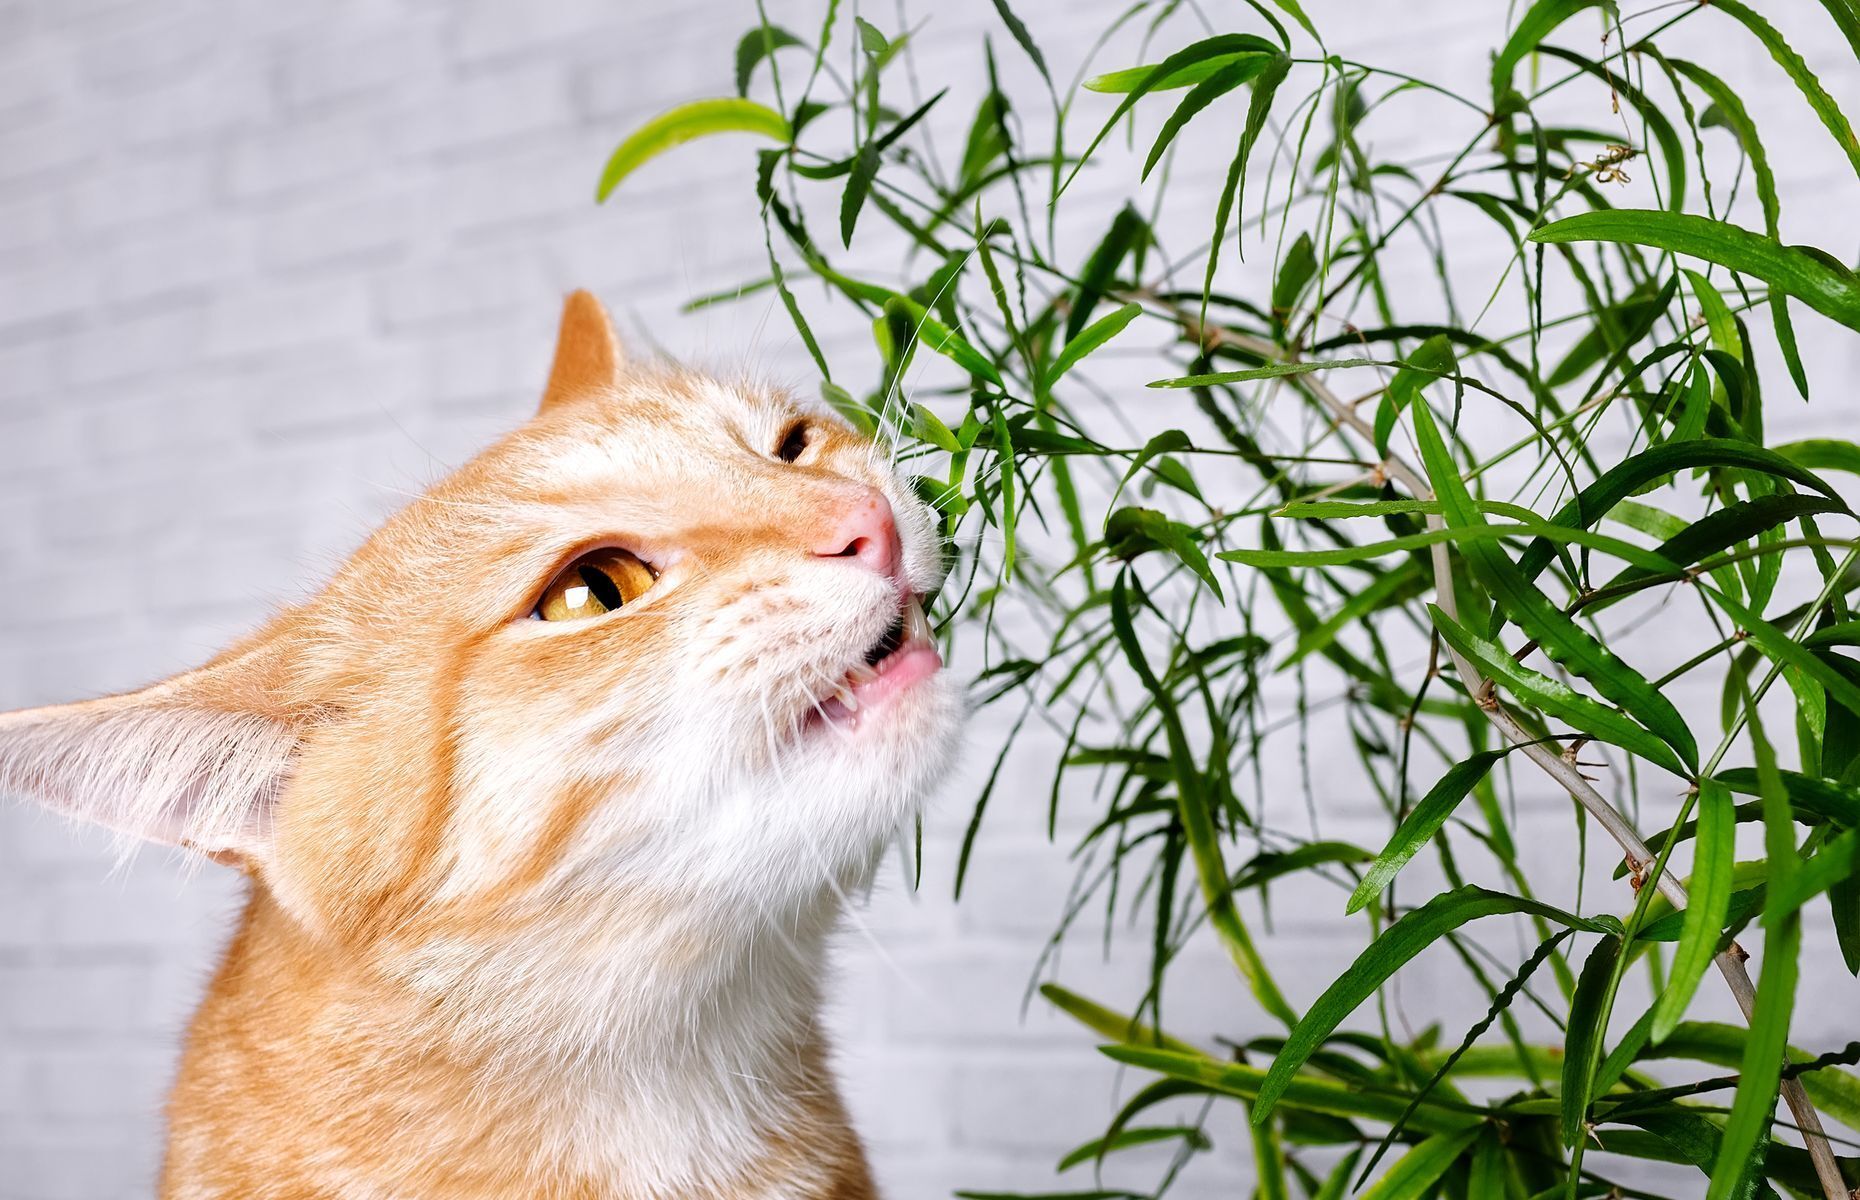 <p>C’est dans leur nature, les chats adorent mordiller toutes sortes de choses, et surtout les plantes d’intérieur. Cependant, <a href="https://www.mondou.com/fr-CA/blogues/conseils/chien/les-plantes-toxiques-pour-vos-animaux-de-compagnie-ad136.html">plusieurs plantes sont toxiques pour les félins</a>, comme le poinsettia et le dieffenbachia, ainsi que les lys. Évitez d’en acheter si vous avez un chat, et proposez plutôt à votre minou de l’herbe à chat.</p>